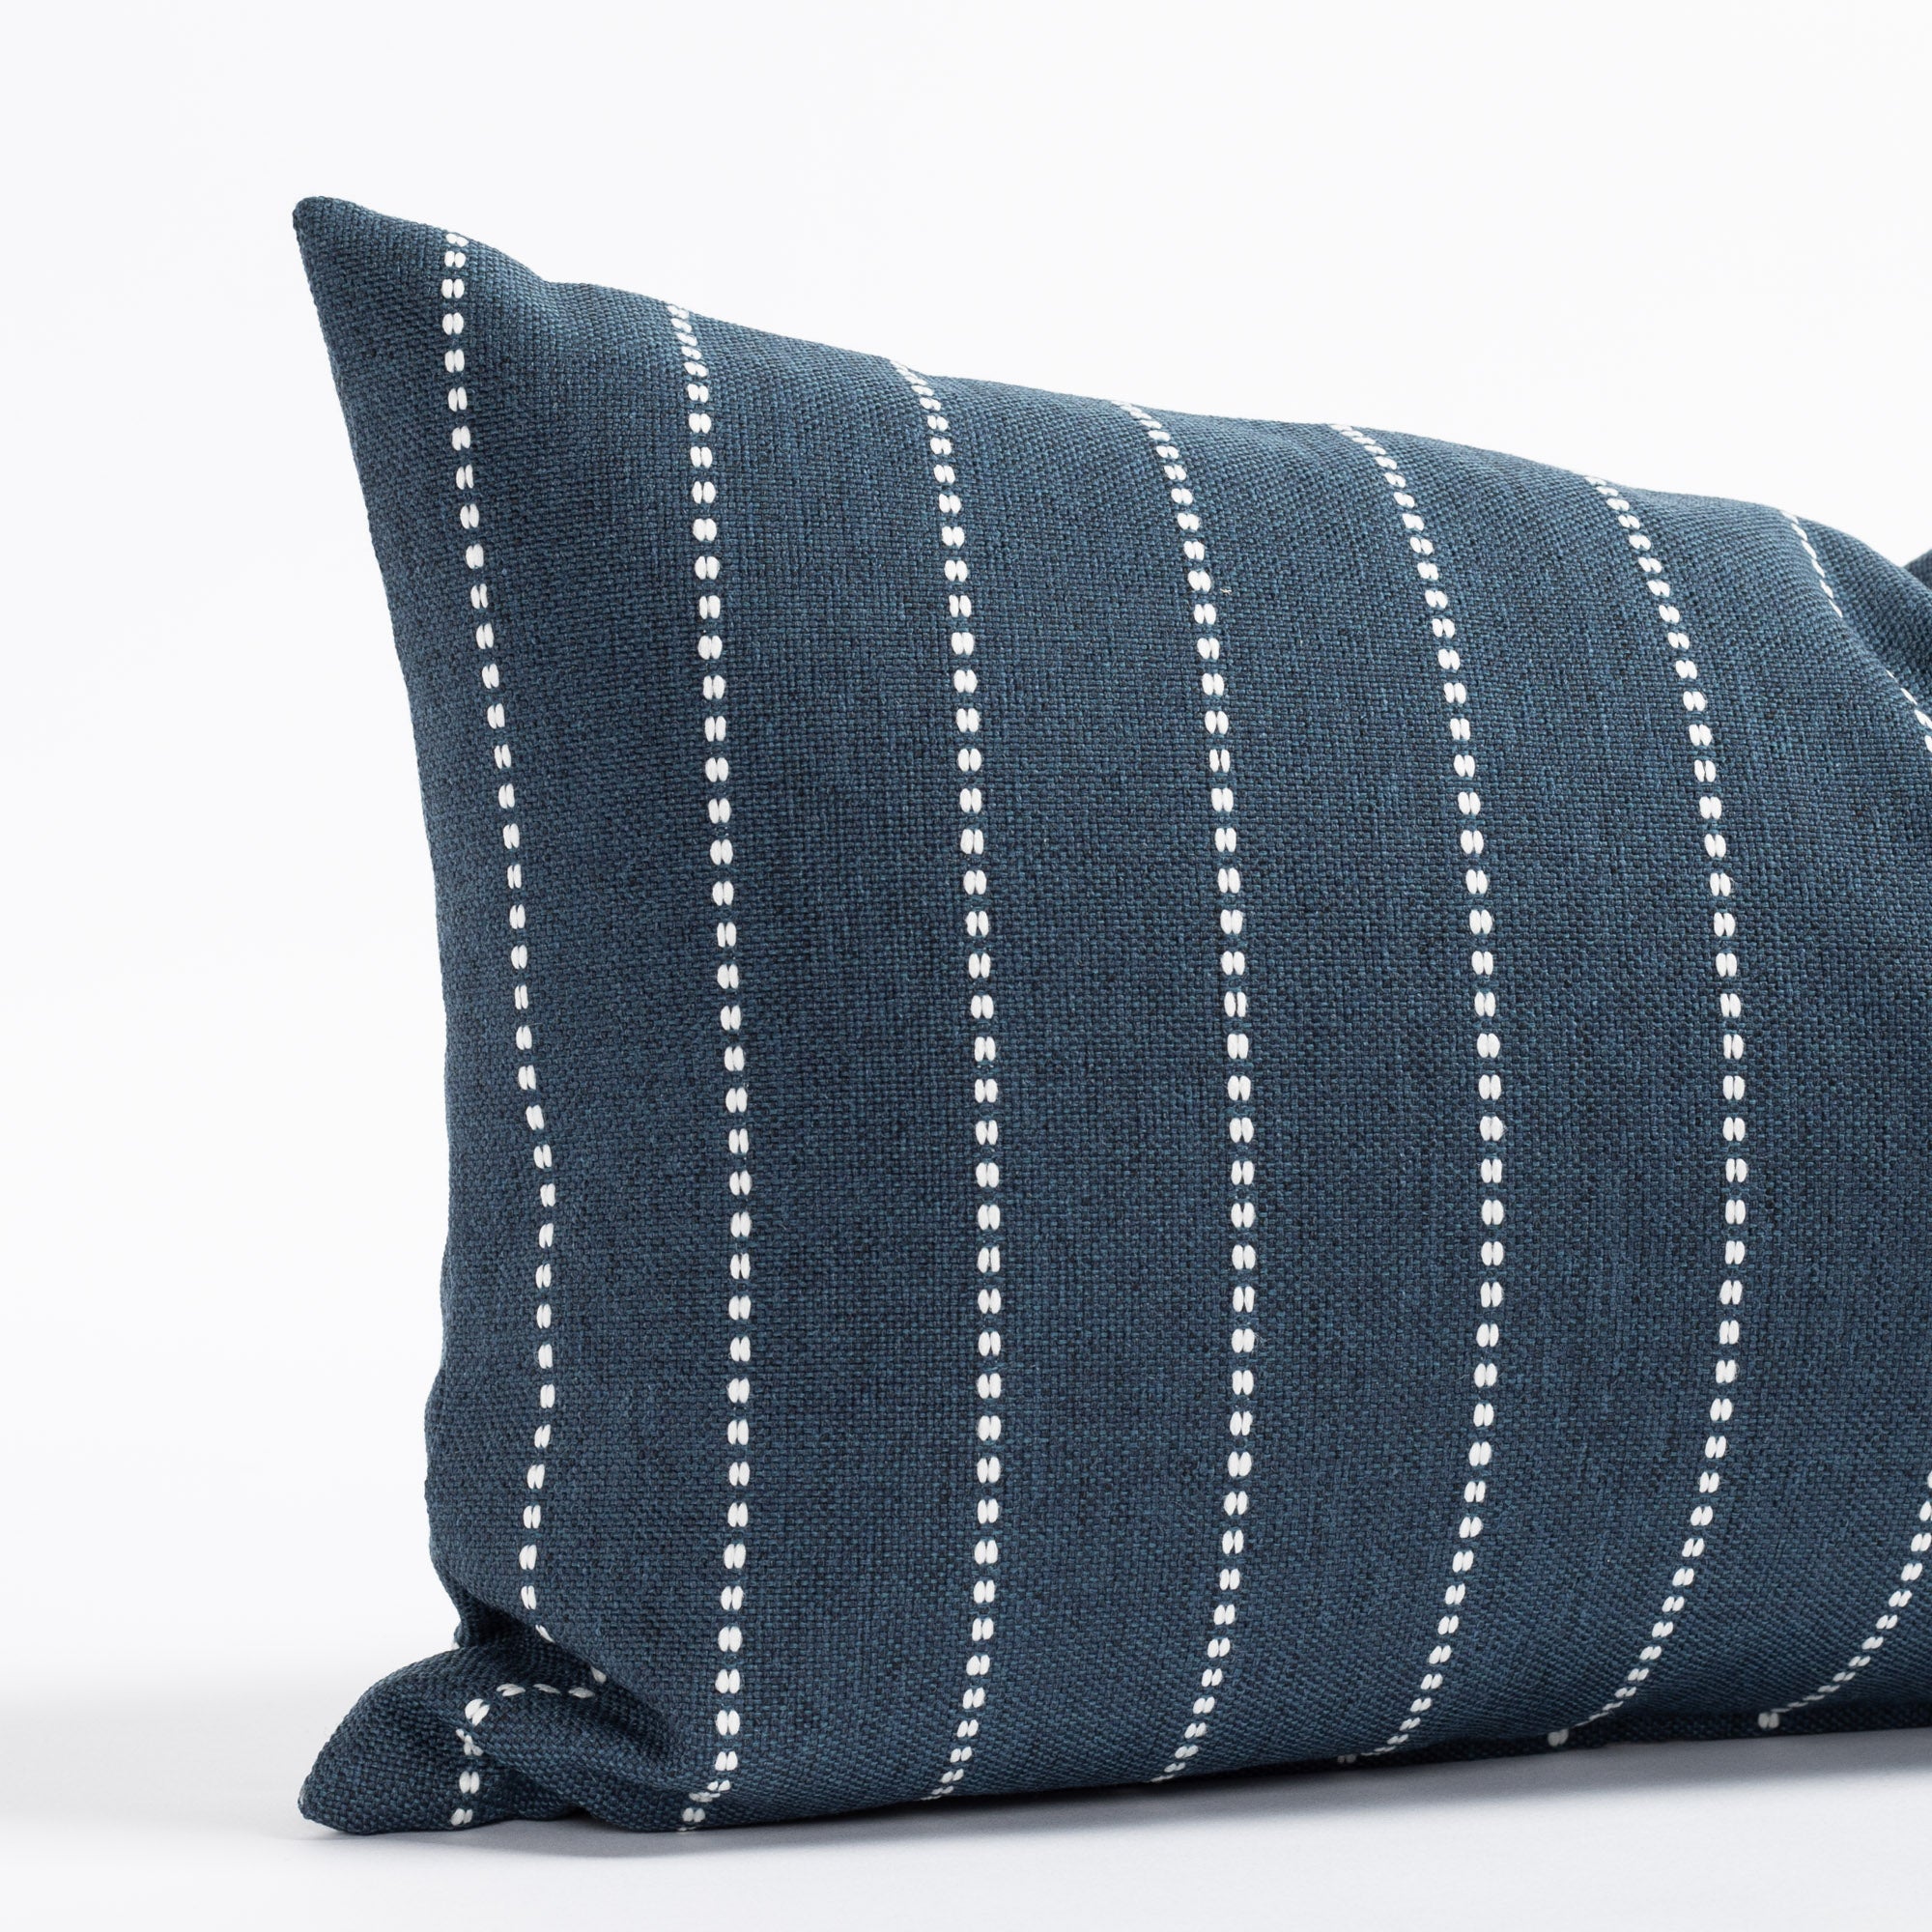 Tonic Living Pillows - Throw Pillows, Decorative Pillows, Lumbar